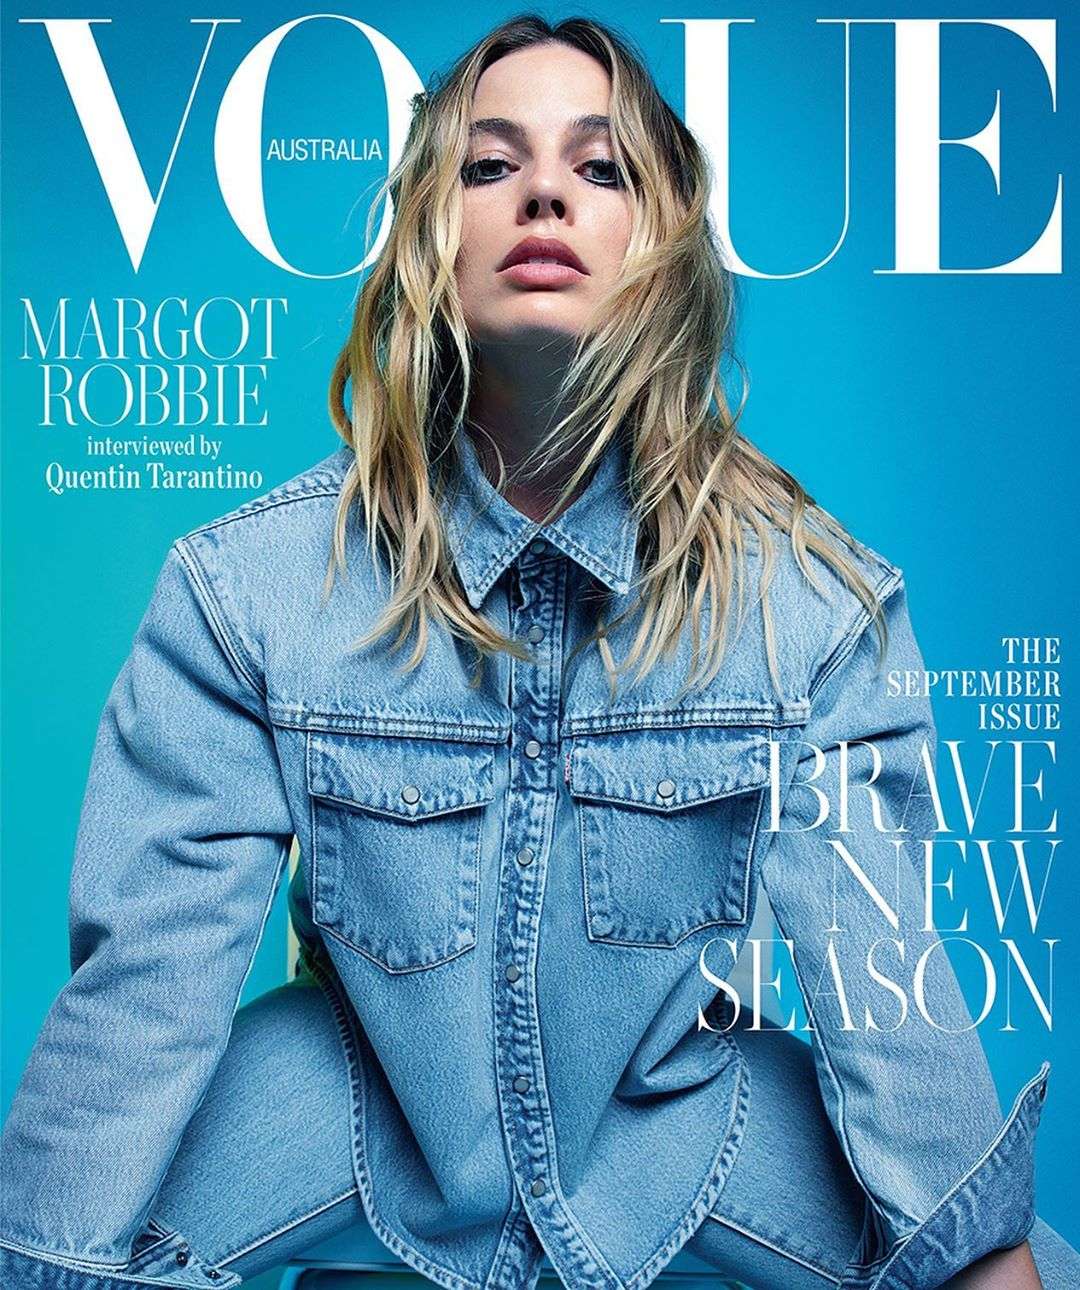 Марго Робби украсила обложку Vogue, но фанов напугал ее худощавый вид - фото 446832